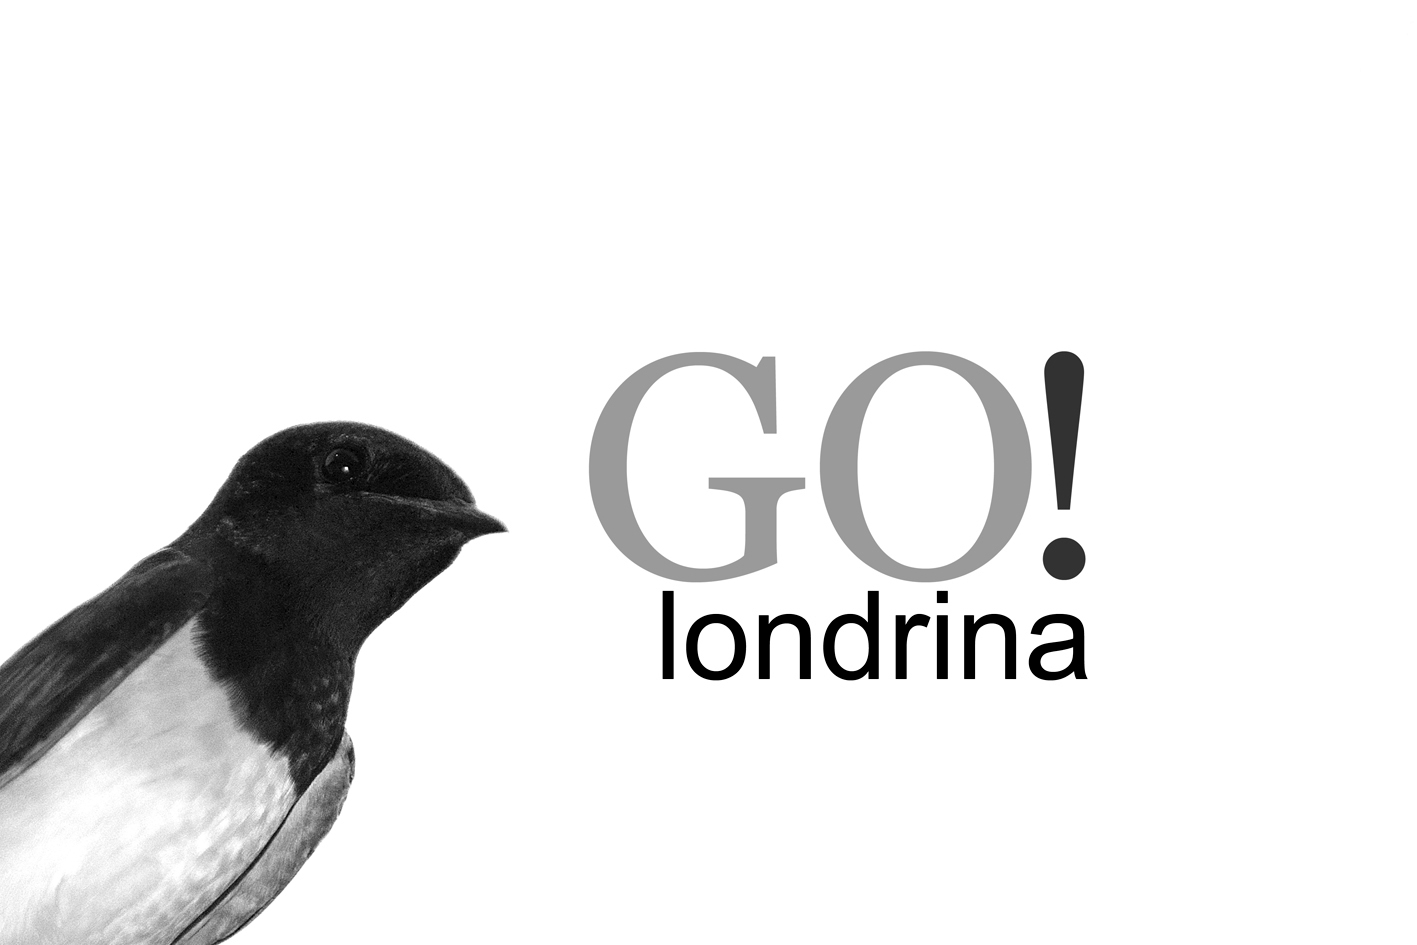 GO! londrina